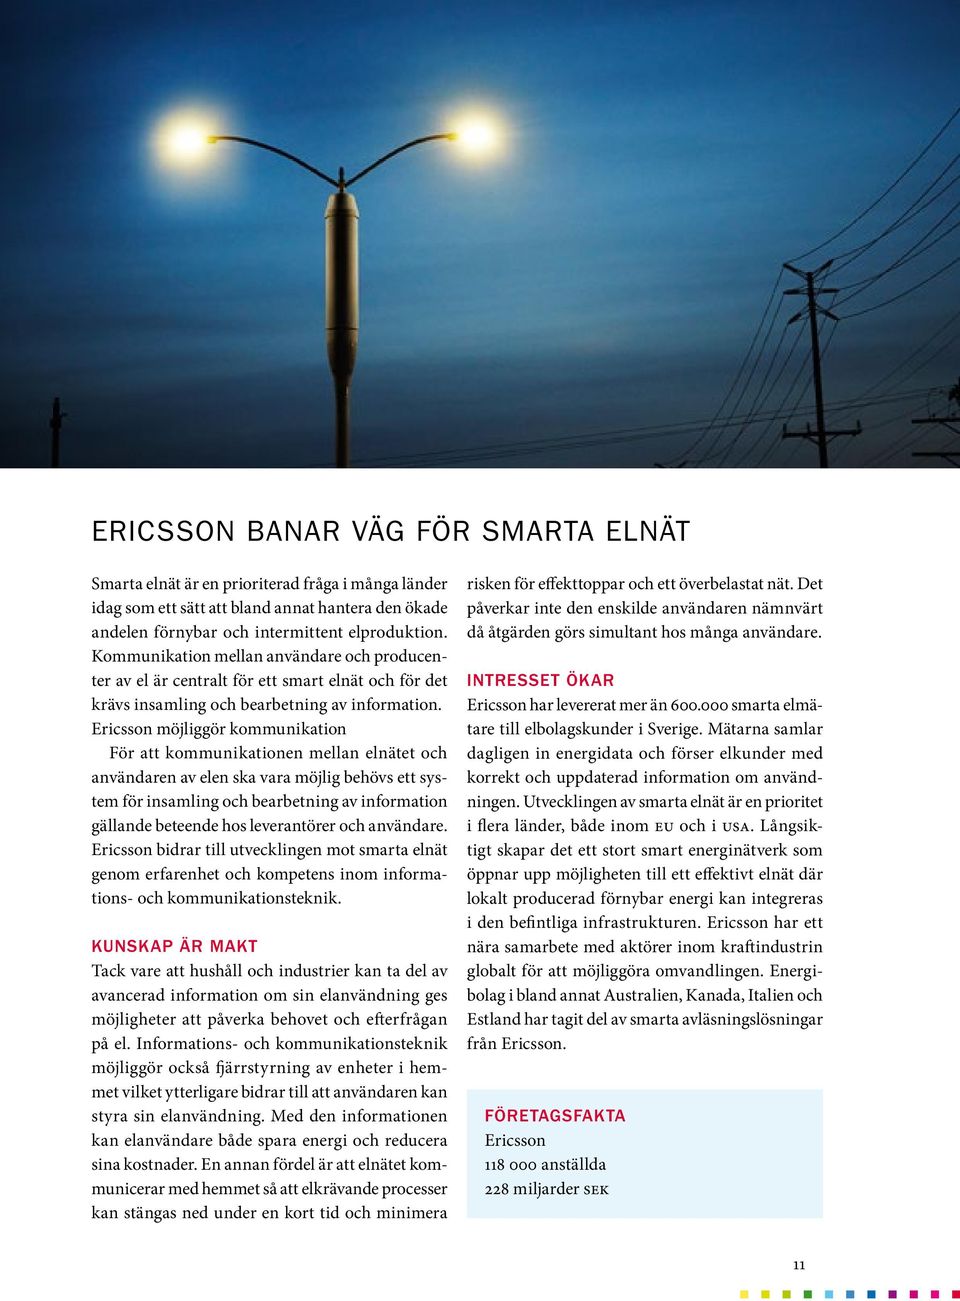 Ericsson möjliggör kommunikation För att kommunikationen mellan elnätet och användaren av elen ska vara möjlig behövs ett system för insamling och bearbetning av information gällande beteende hos